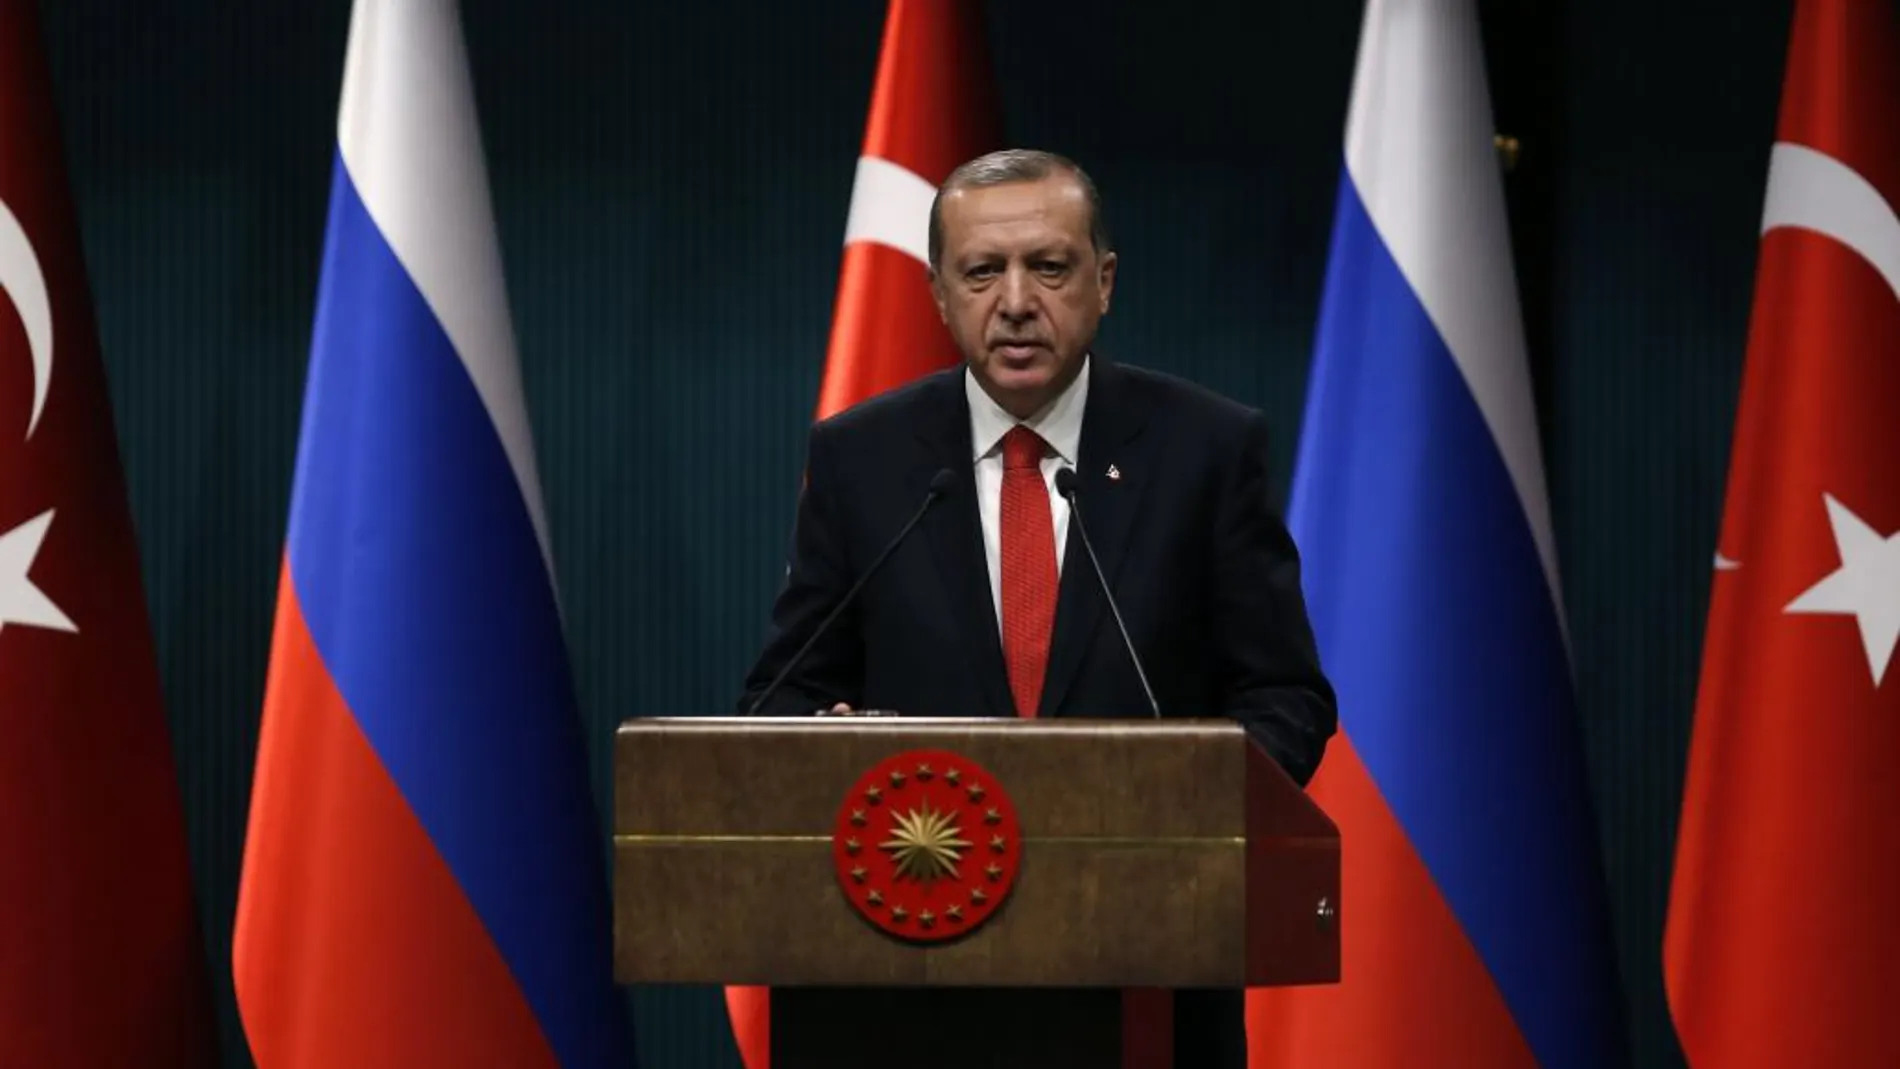 El presidente turco, Recep Tayyip Erdogan, habla durante una conferencia de prensa luego de una reunión con el presidente ruso, Vladimir Putin, ayer